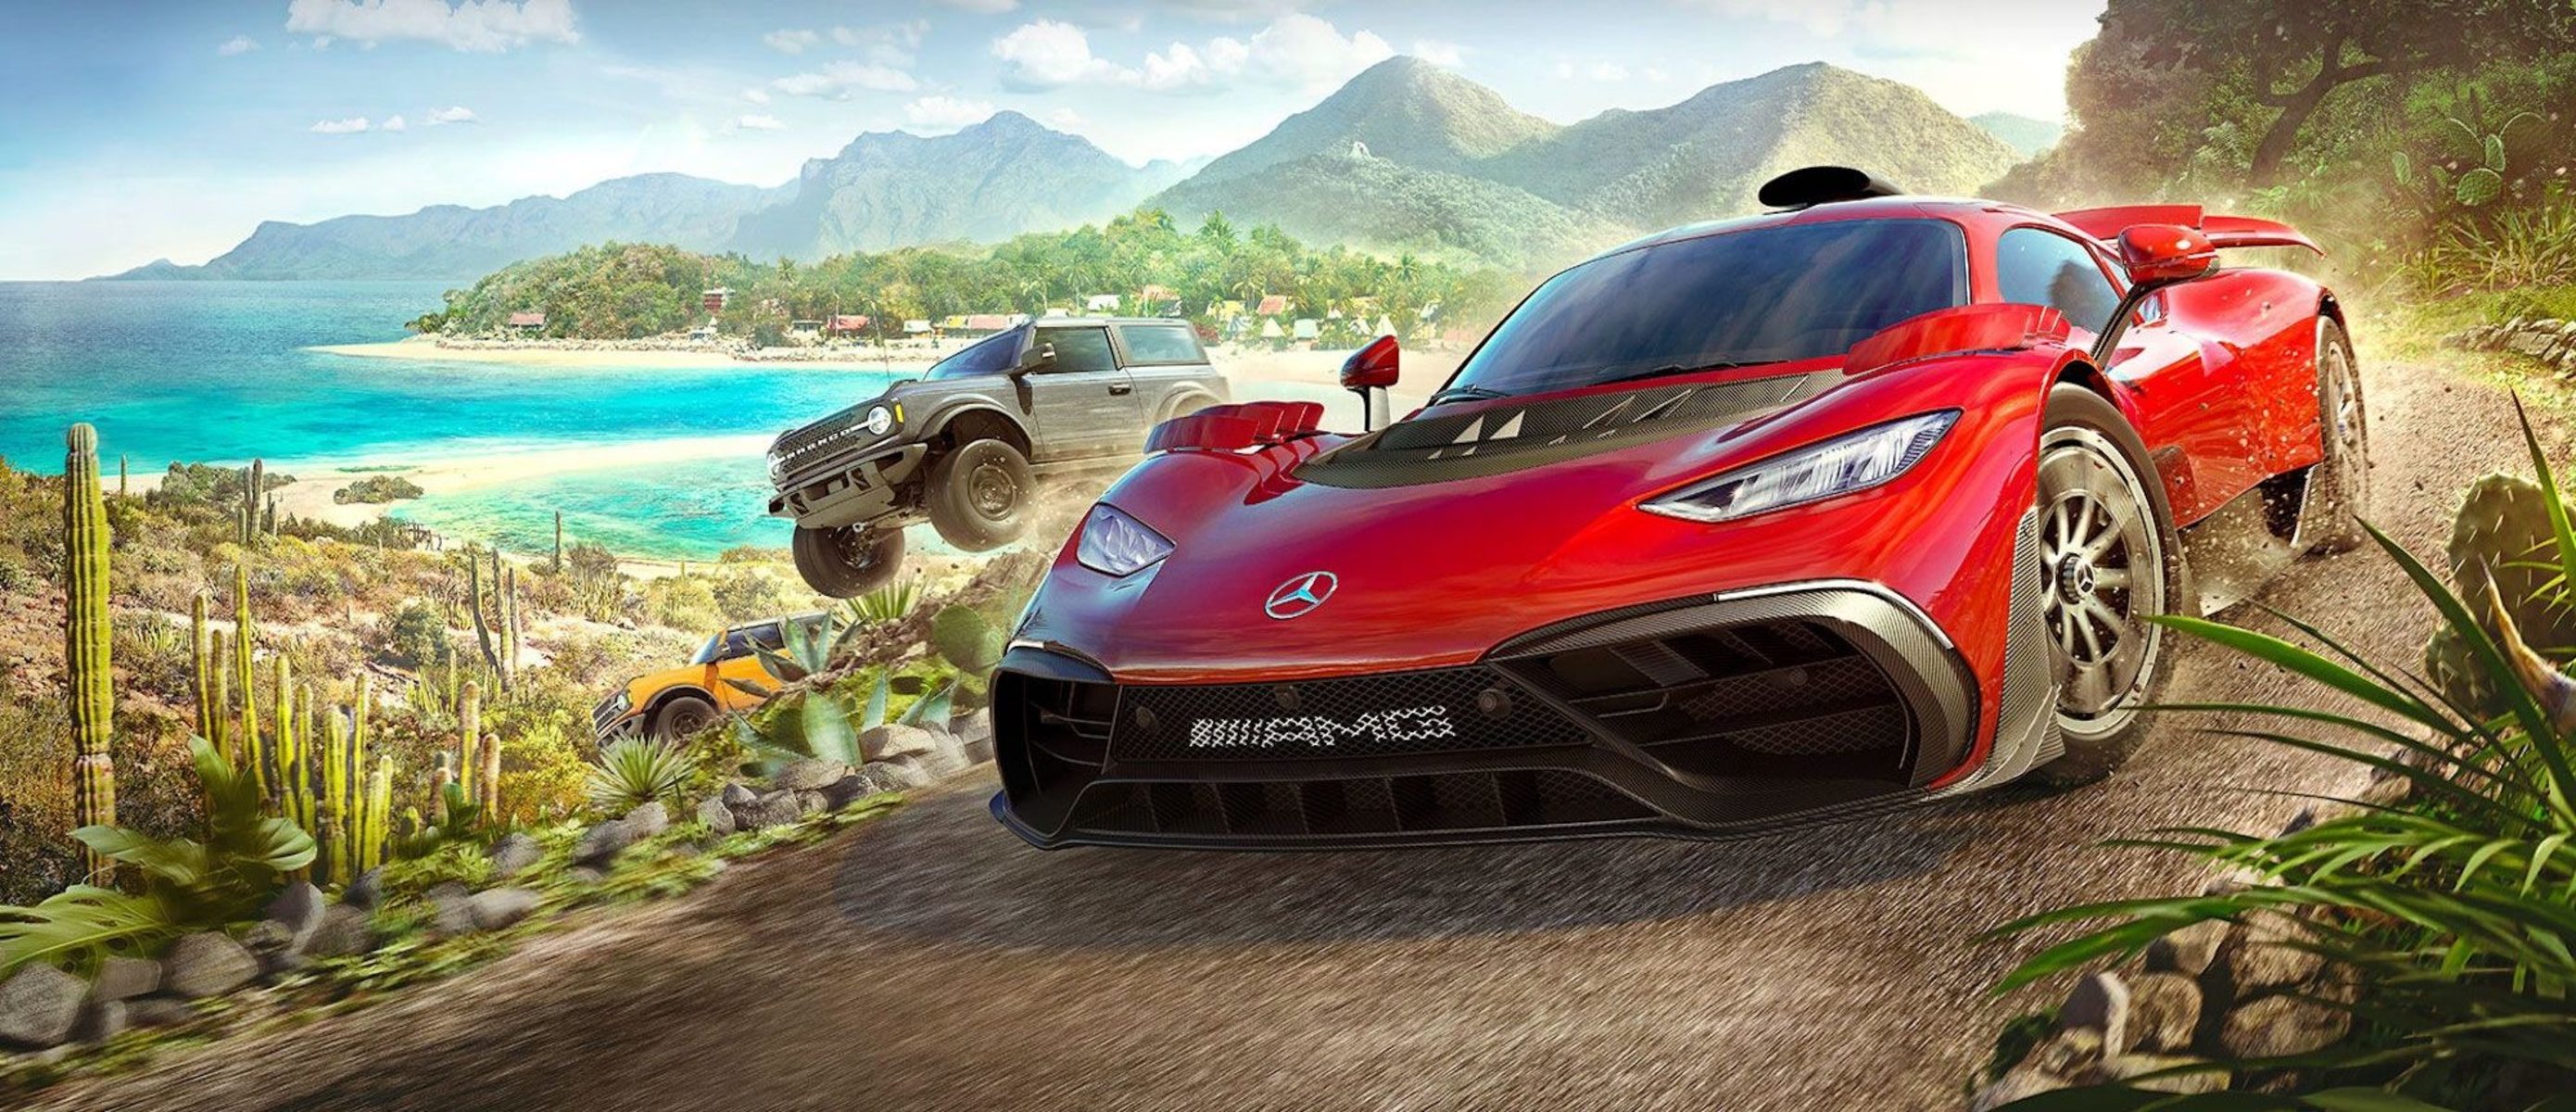 Версии форза хорайзен 5. Форза хорайзен 5. Ворза хоракзер 5. Forza Horizon 5 PLAYSTATION. Forza Horizon 5 Постер.